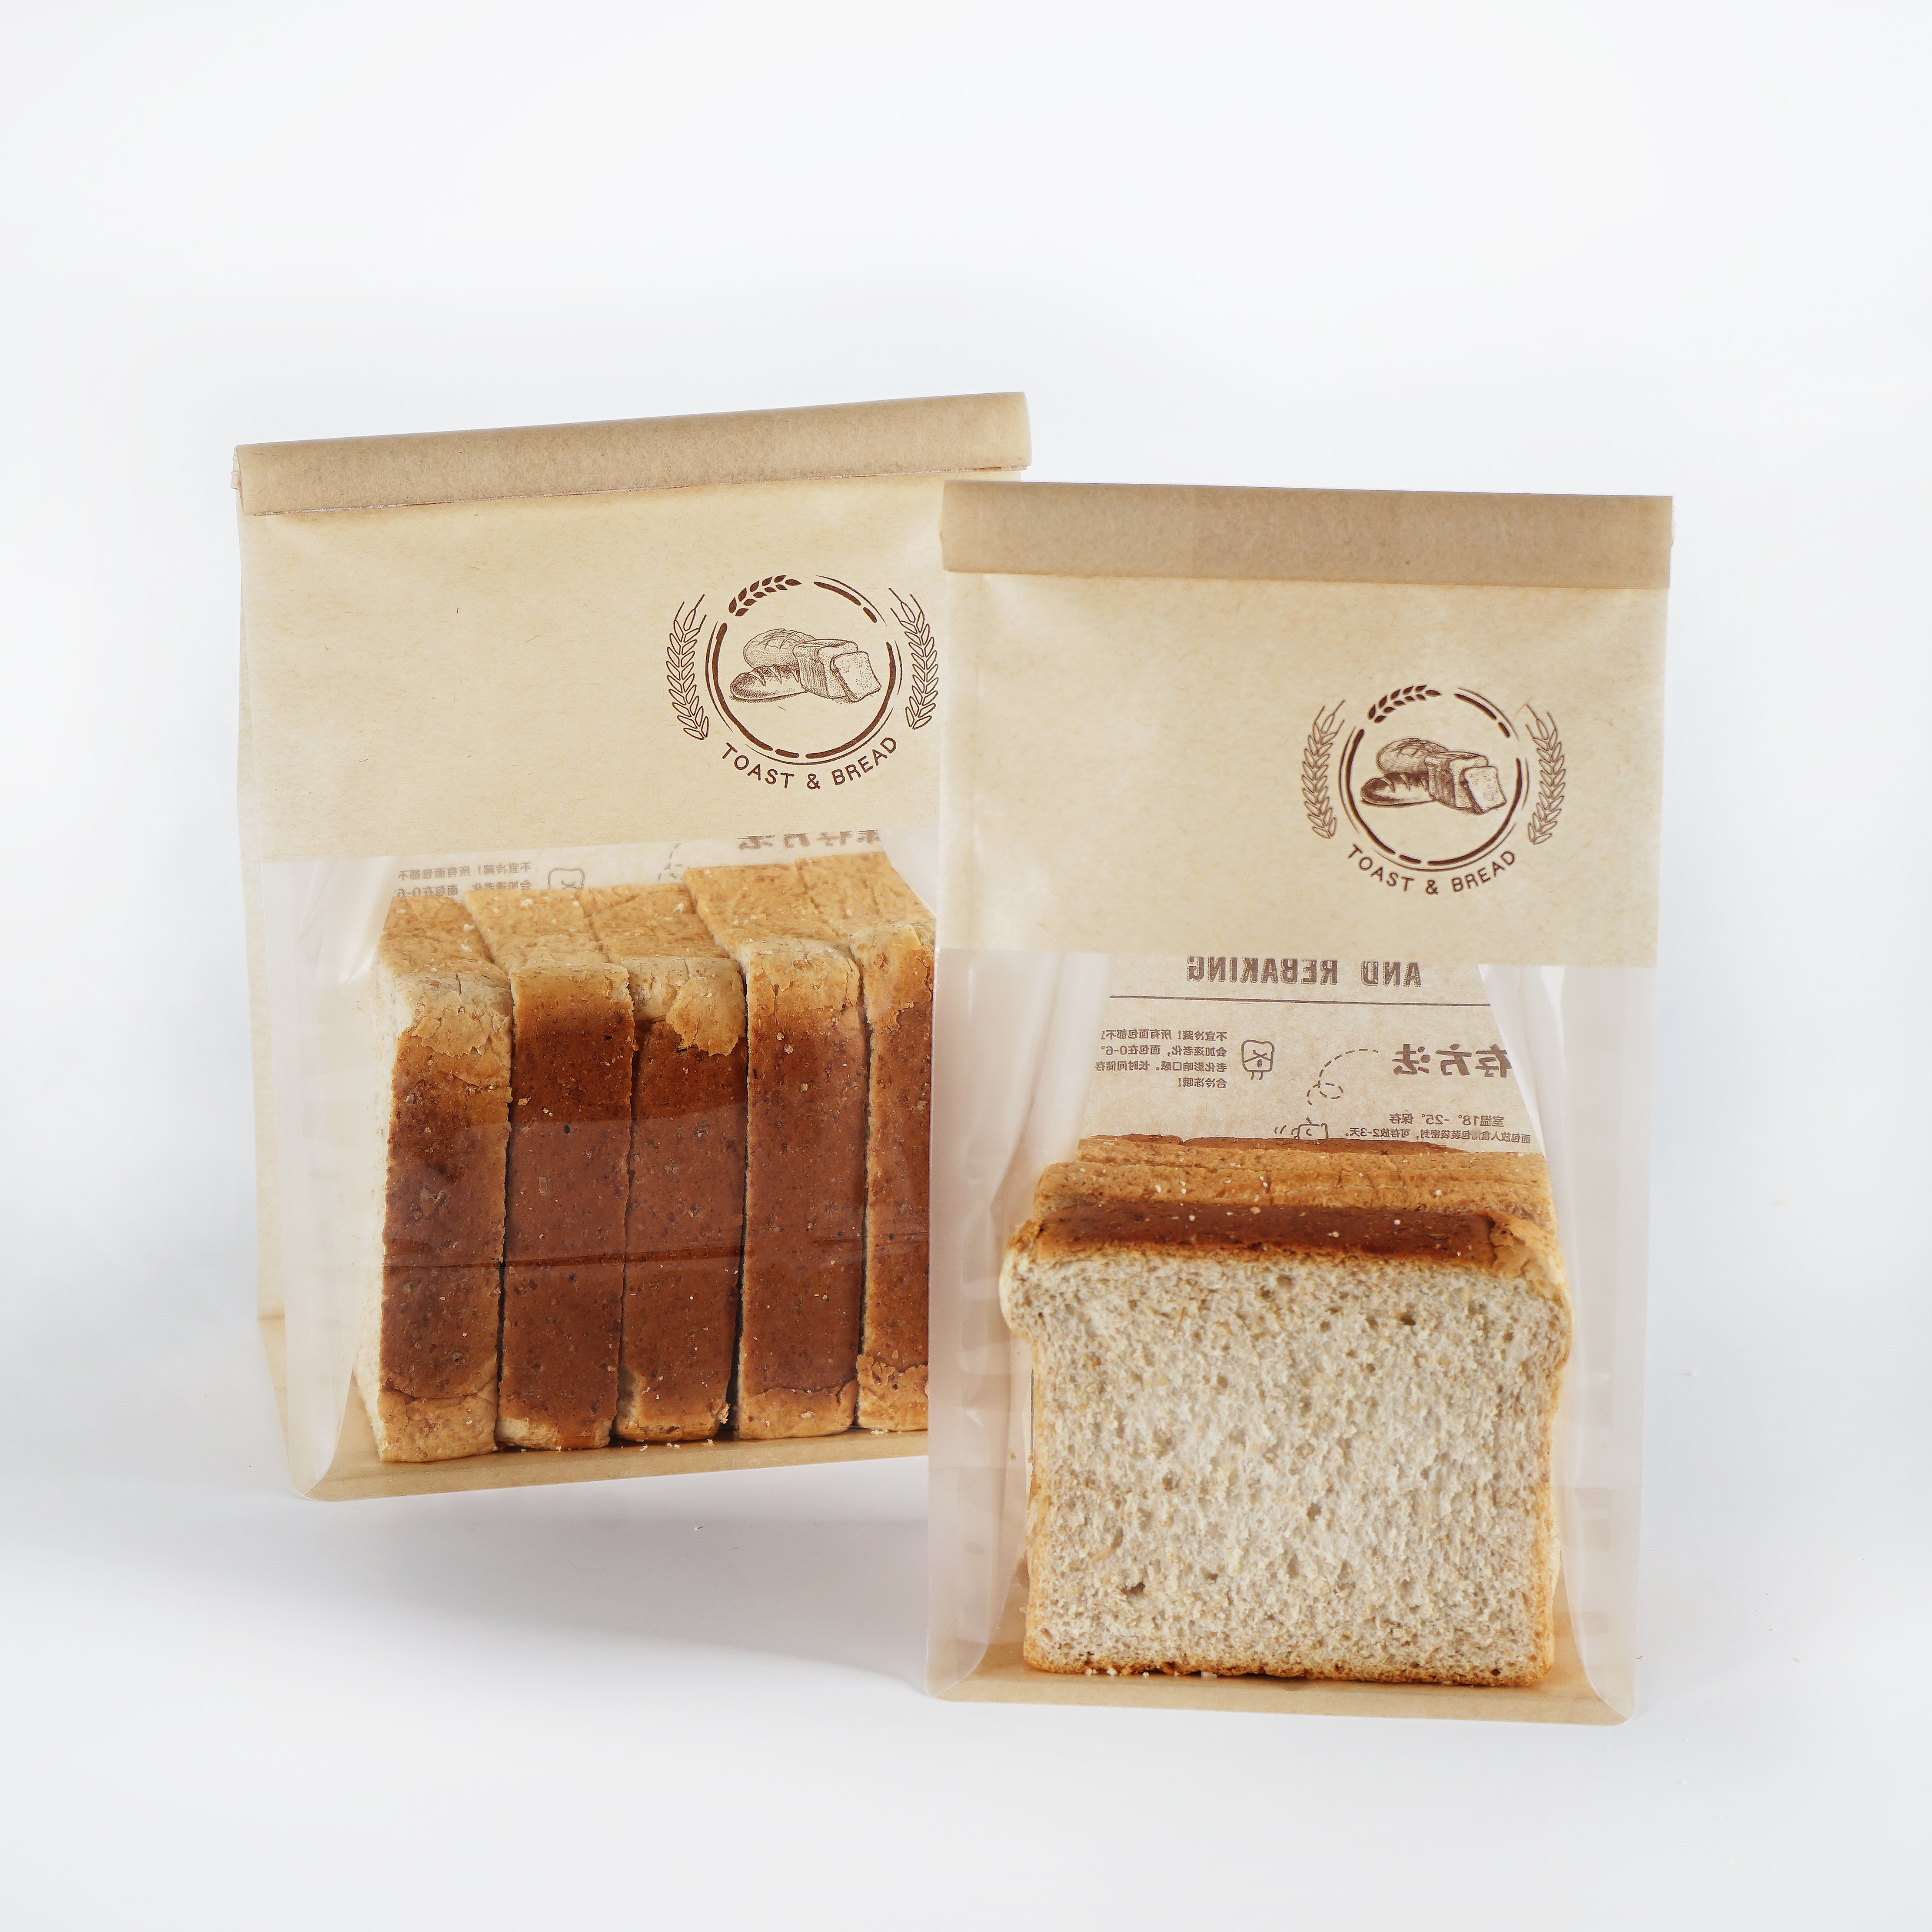 Ekologické 50 g/m² nepromastitelné jídlo s sebou Balení obědů Hnědý kraftový papír sendvičový sáček